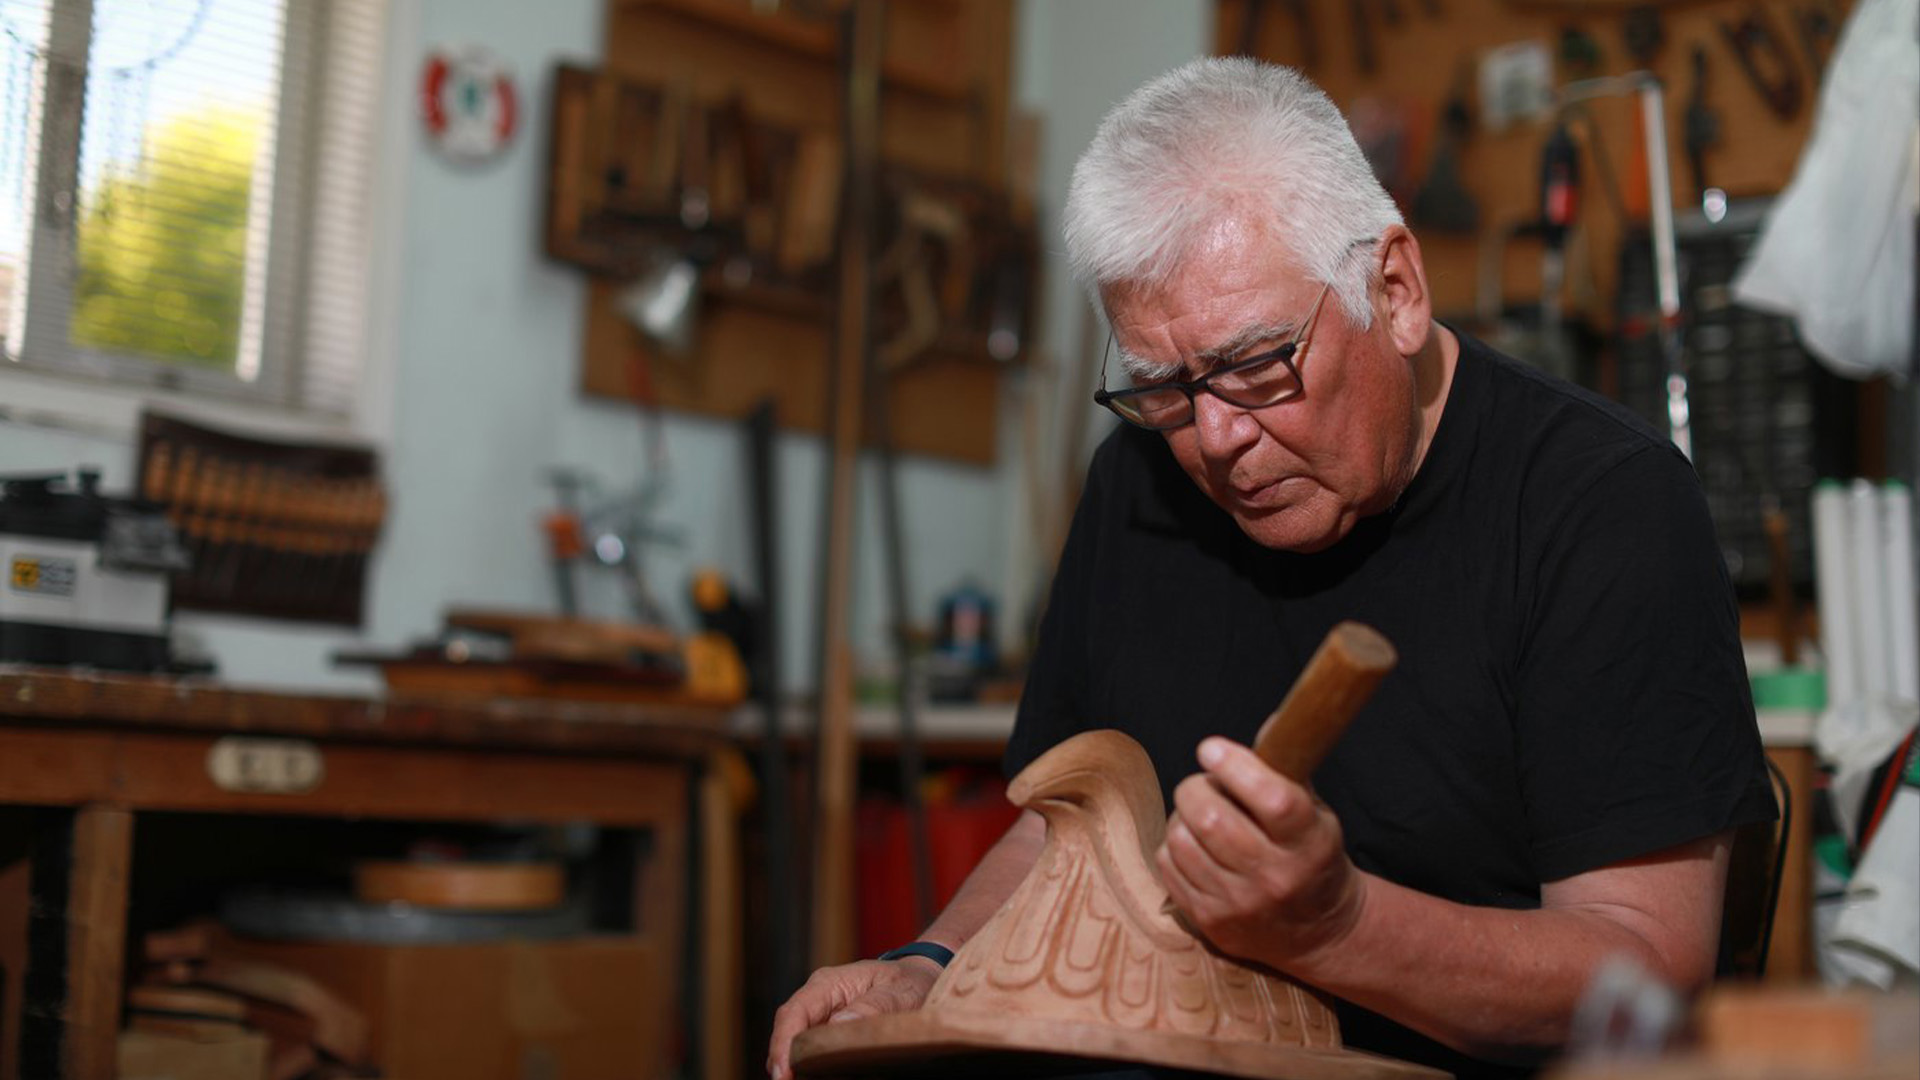 L'artiste des Premières Nations Richard Hunt a commencé à sculpter à l'âge de 13 ans maintenant à 71 ans. Il continue de perfectionner ses compétences en travaillant sur sa dernière pièce, le masque solaire, en utilisant du cèdre rouge pour créer son œuvre unique dans son studio à Victoria, en Colombie-Britannique. le jeudi 30 juin 2022.